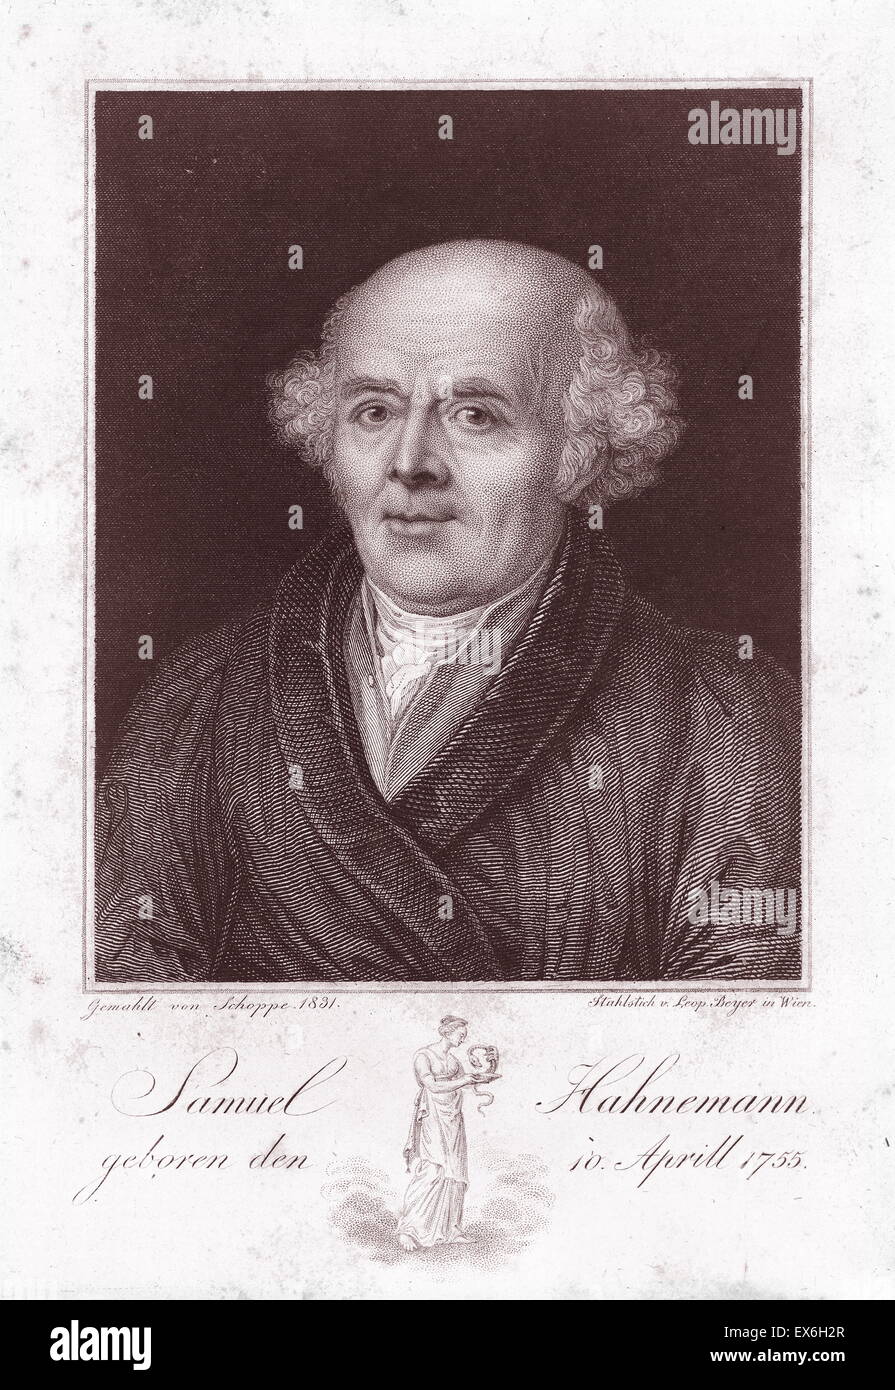 Samuel Hahnemann (1755-1843) qui était un médecin allemand et le fondateur de l'homéopathie. Datée 1820 Banque D'Images